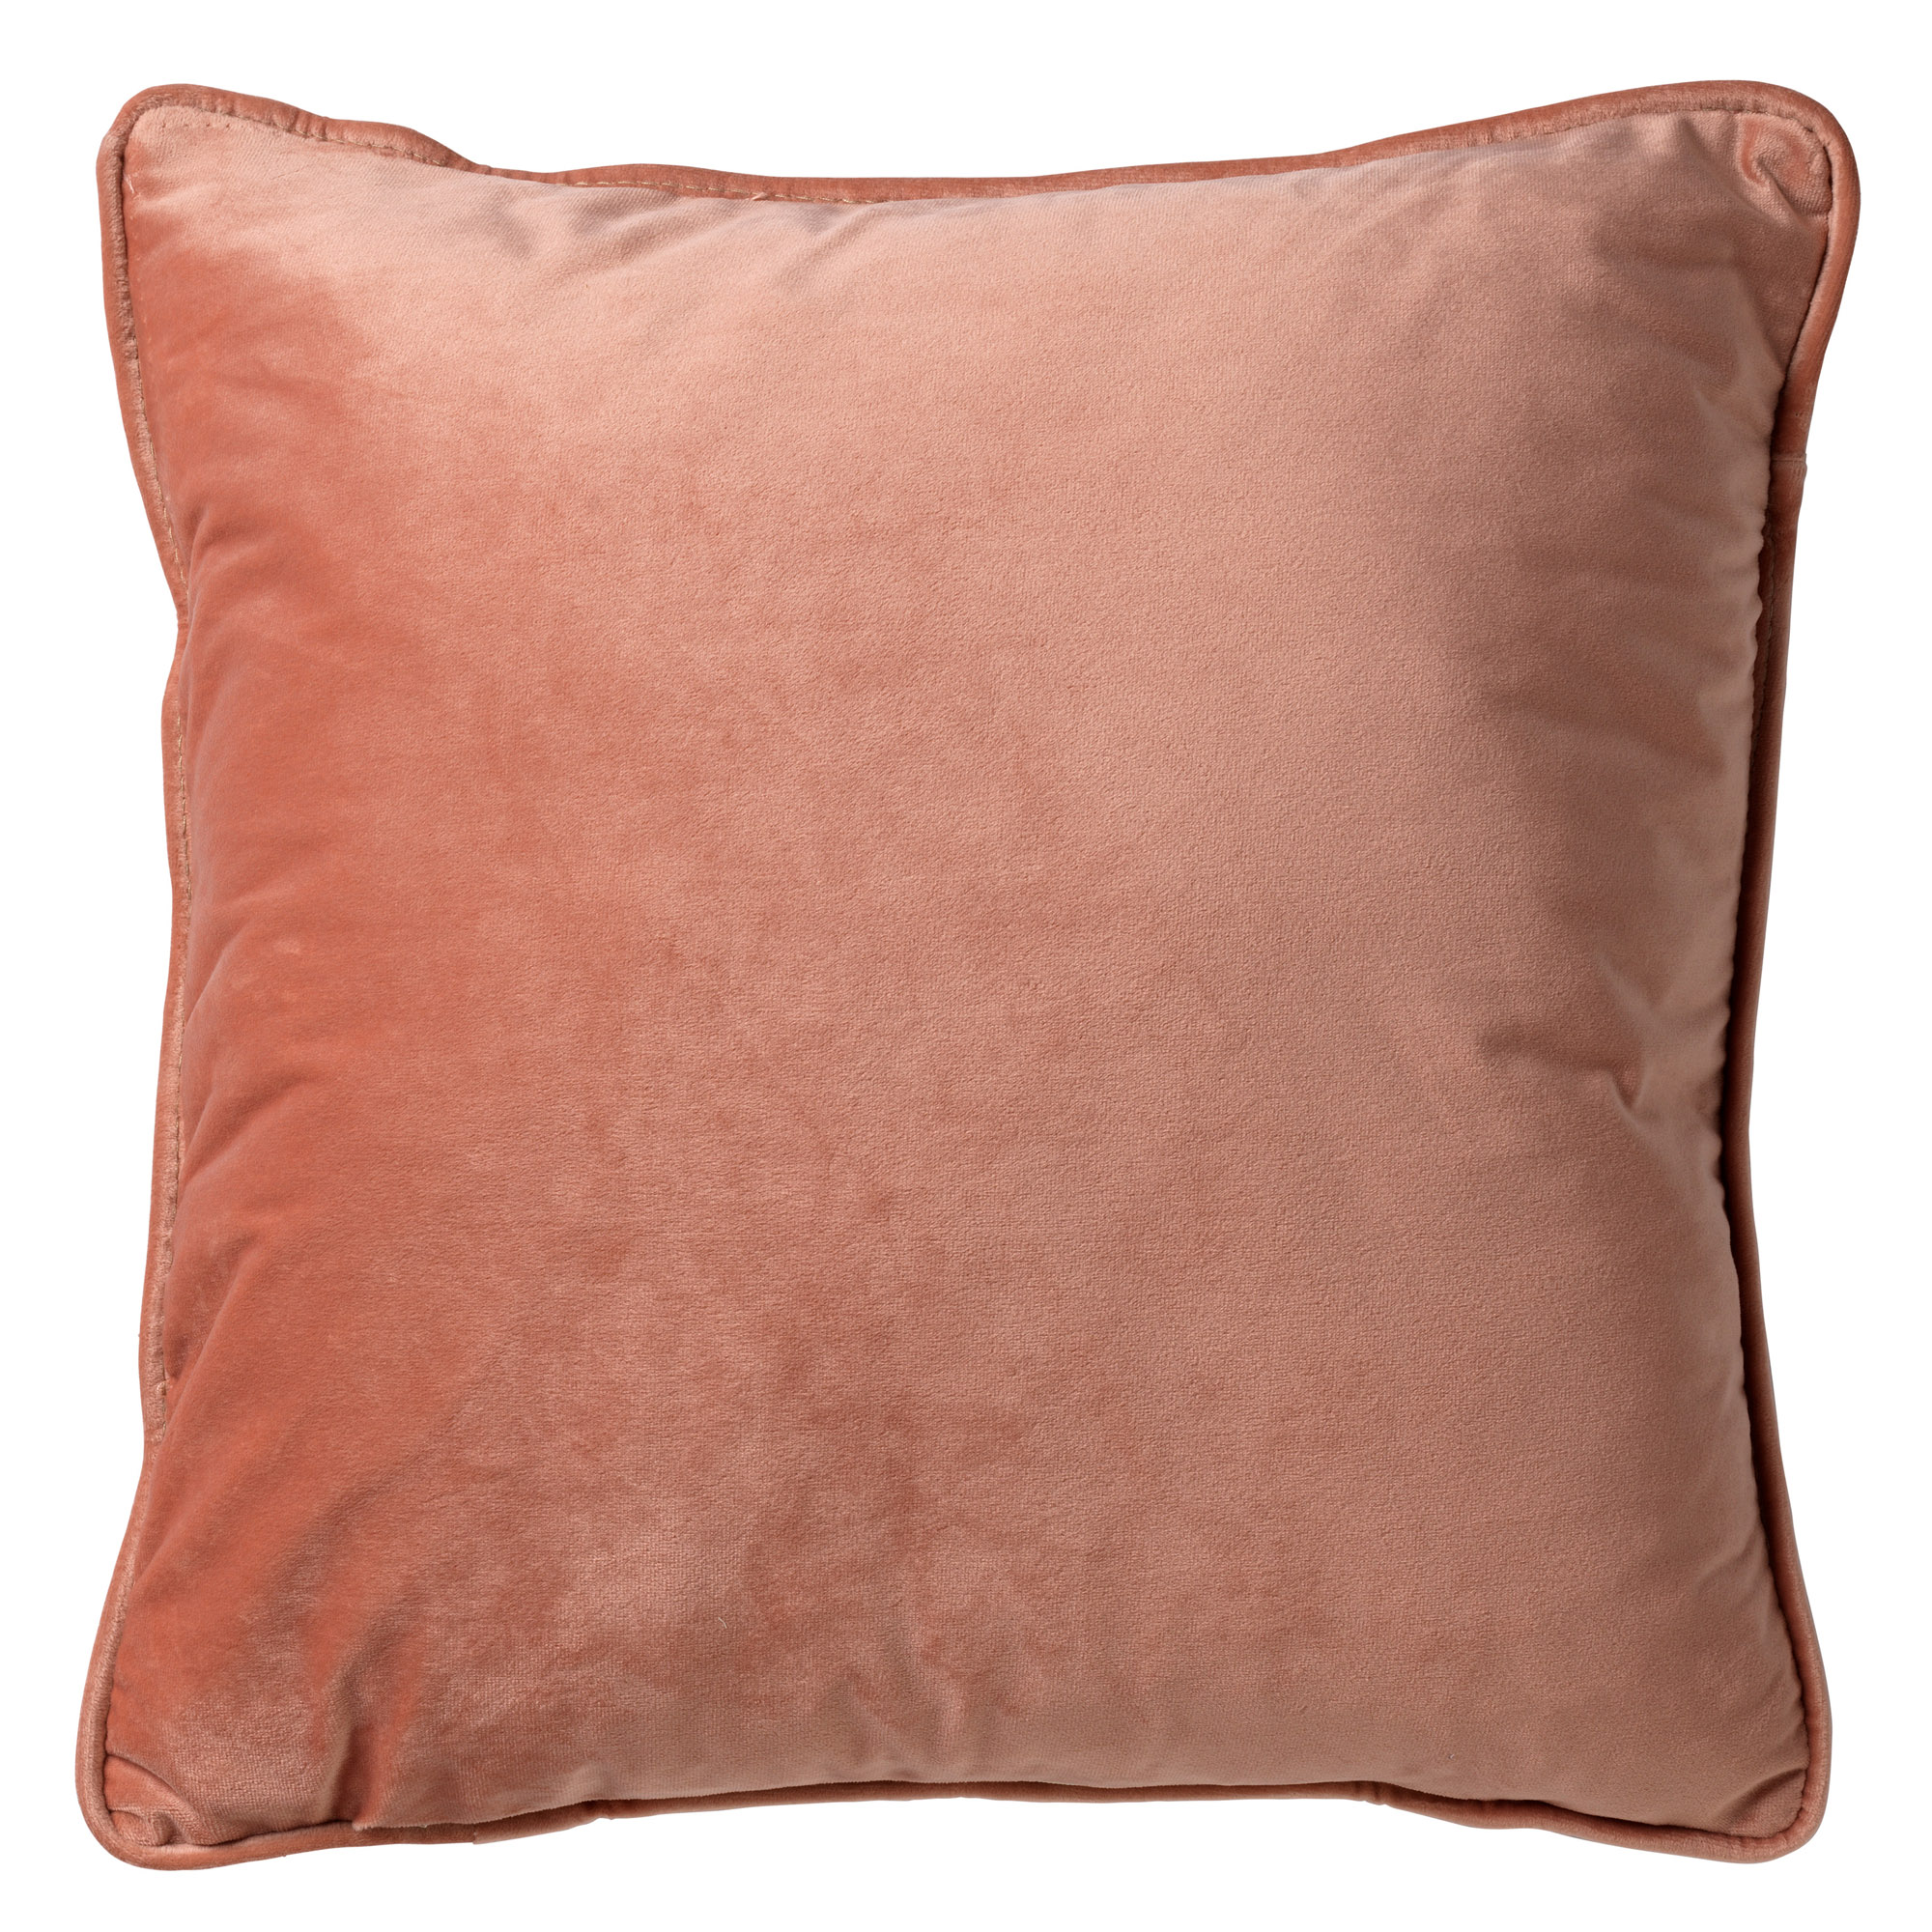 FINN - Cushion 60x60 cm Muted Clay - pink